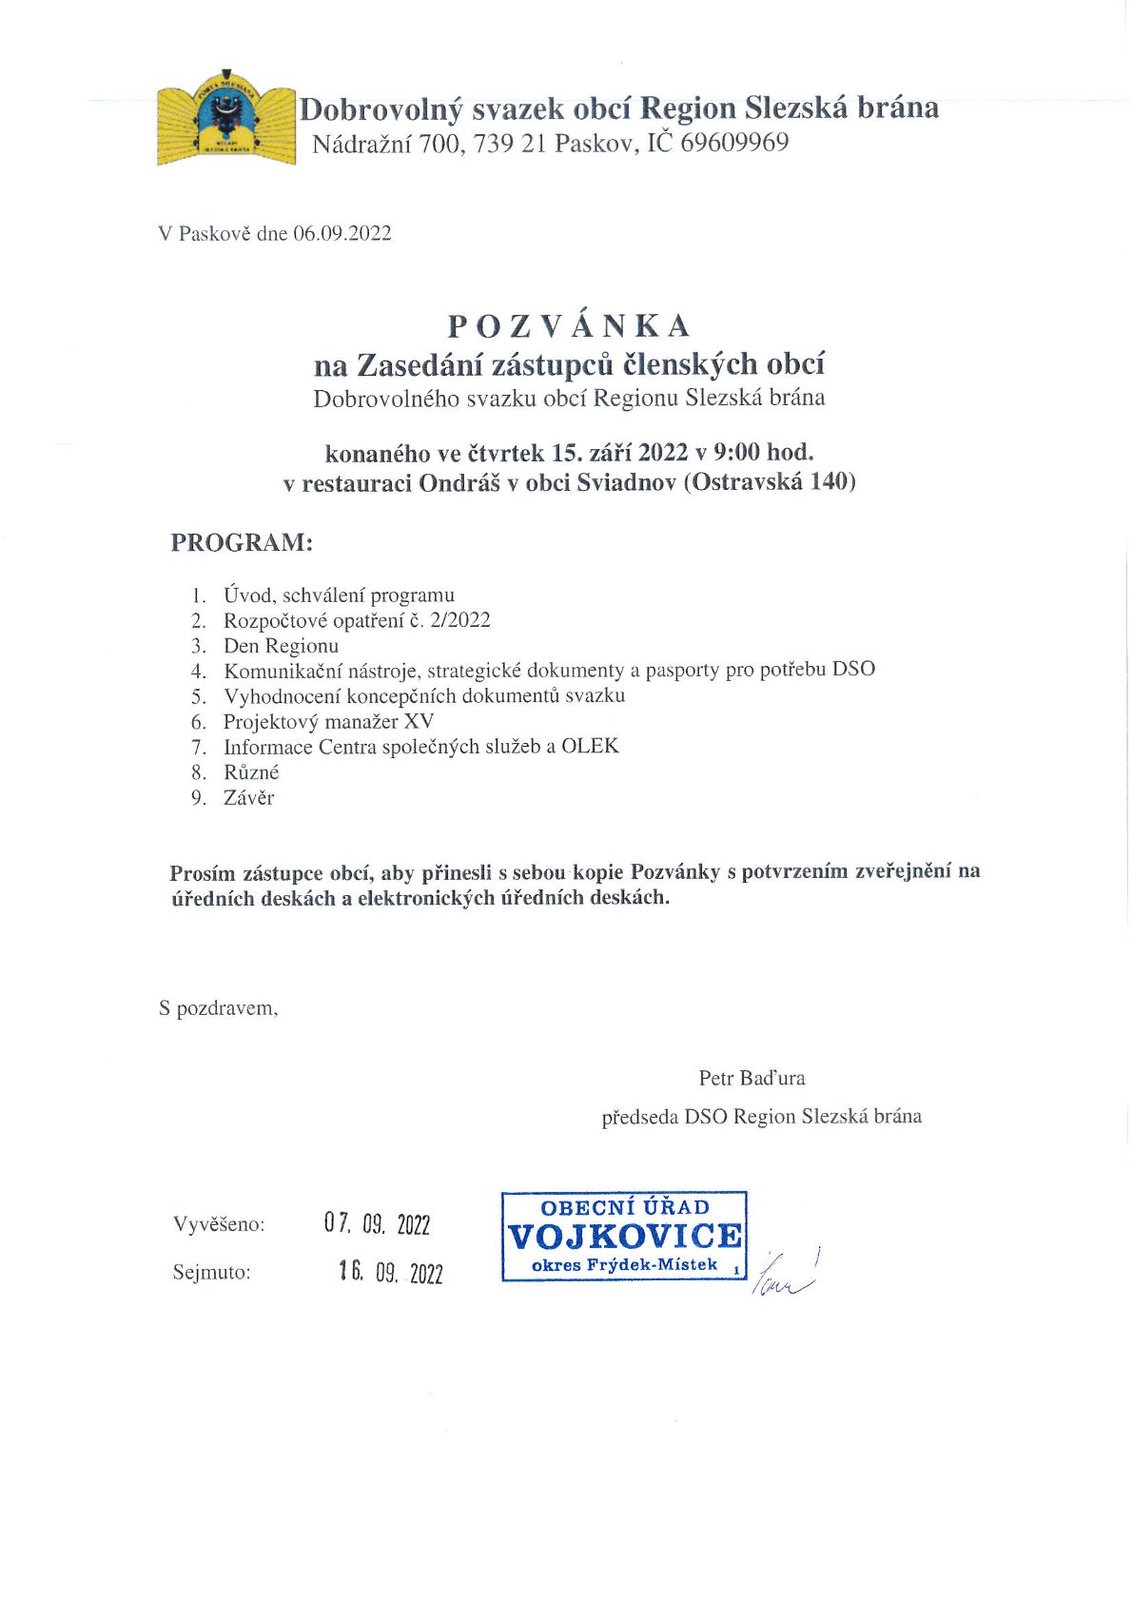 Pozvánka s programem RSB 15.9.2022 Svidnov sken.jpg